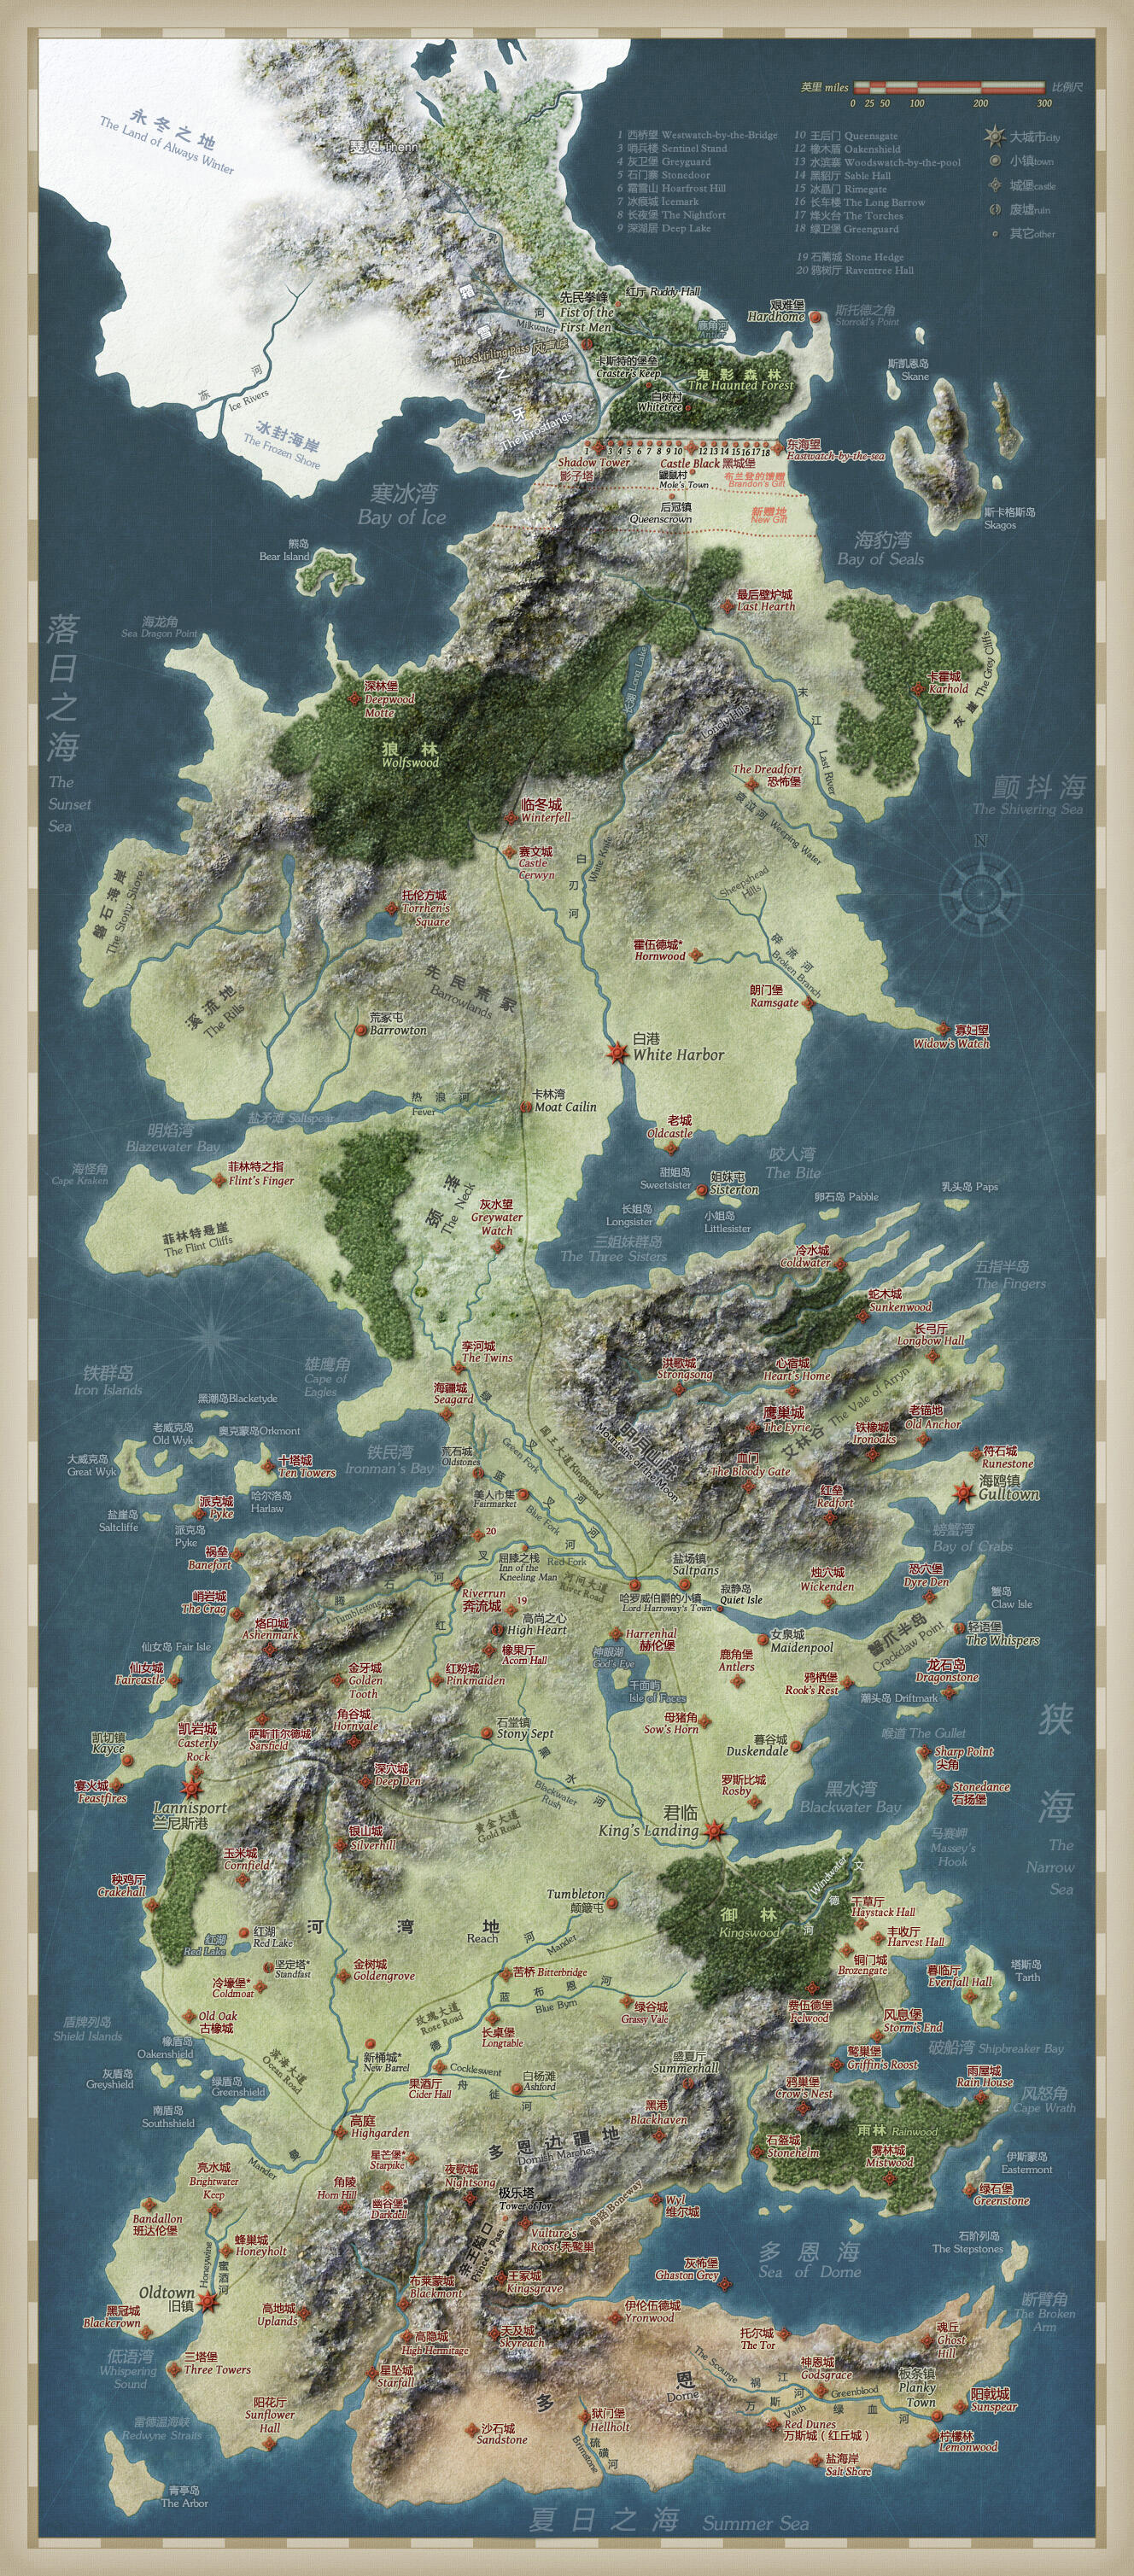 Map_of_westeros.webp